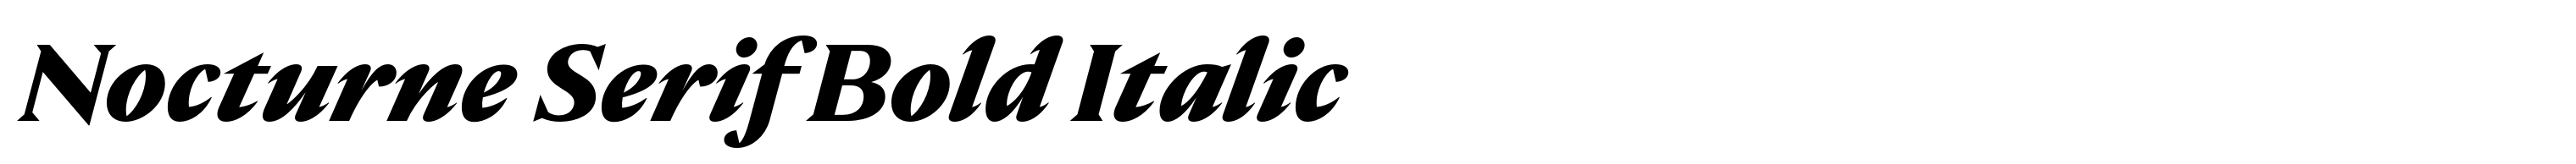 Nocturne Serif Bold Italic